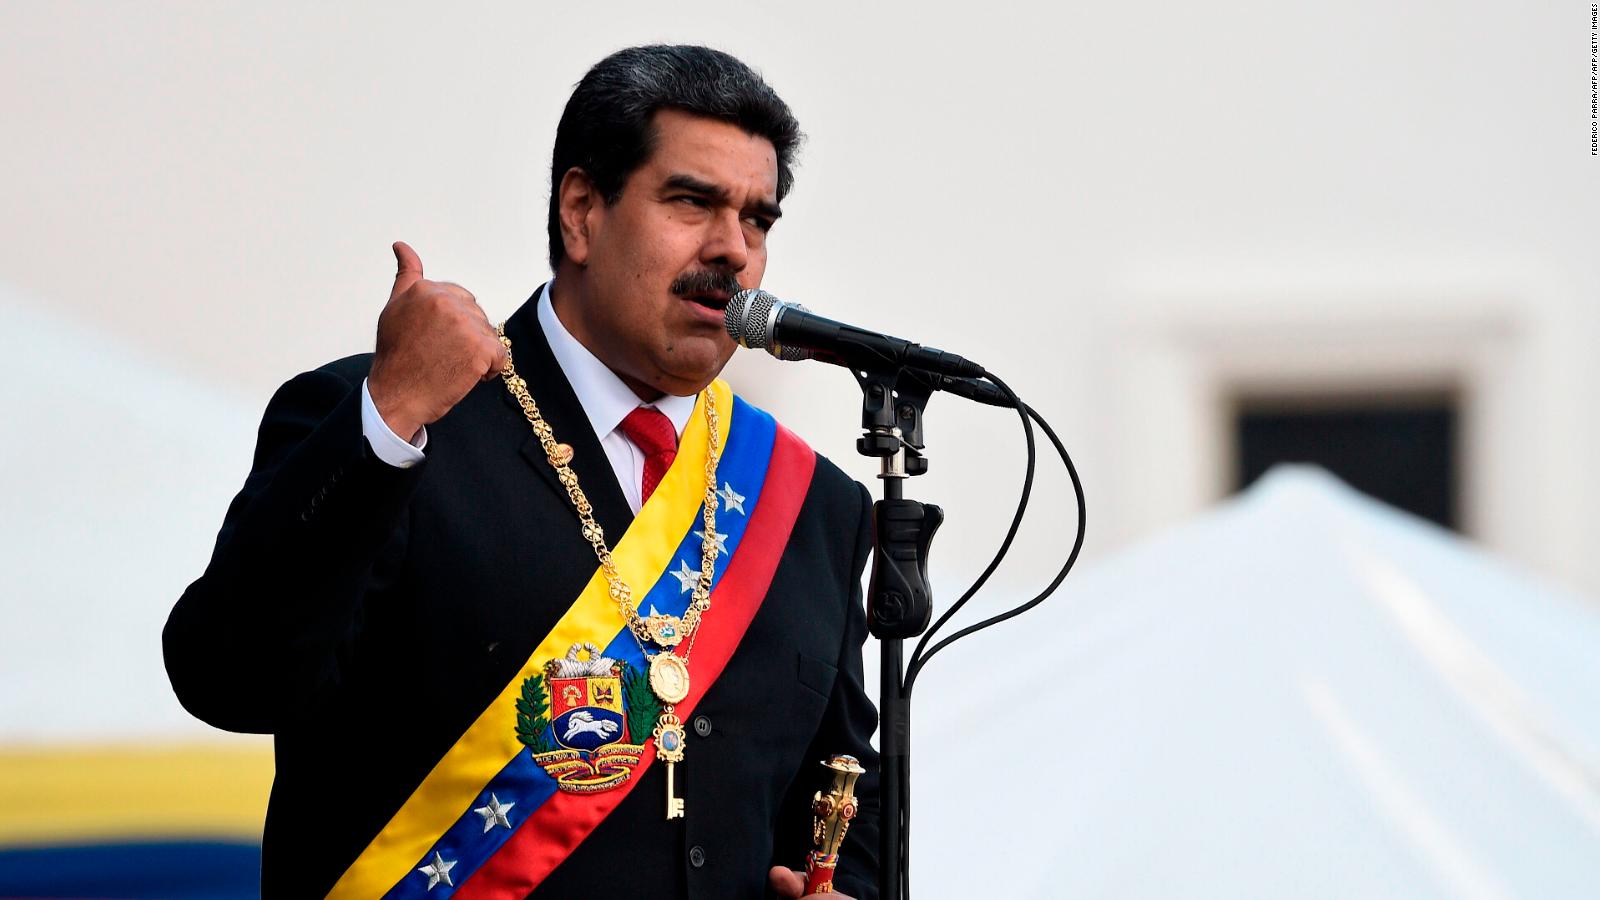 ¿Qué piensan los venezolanos de una salida negociada con Maduro?